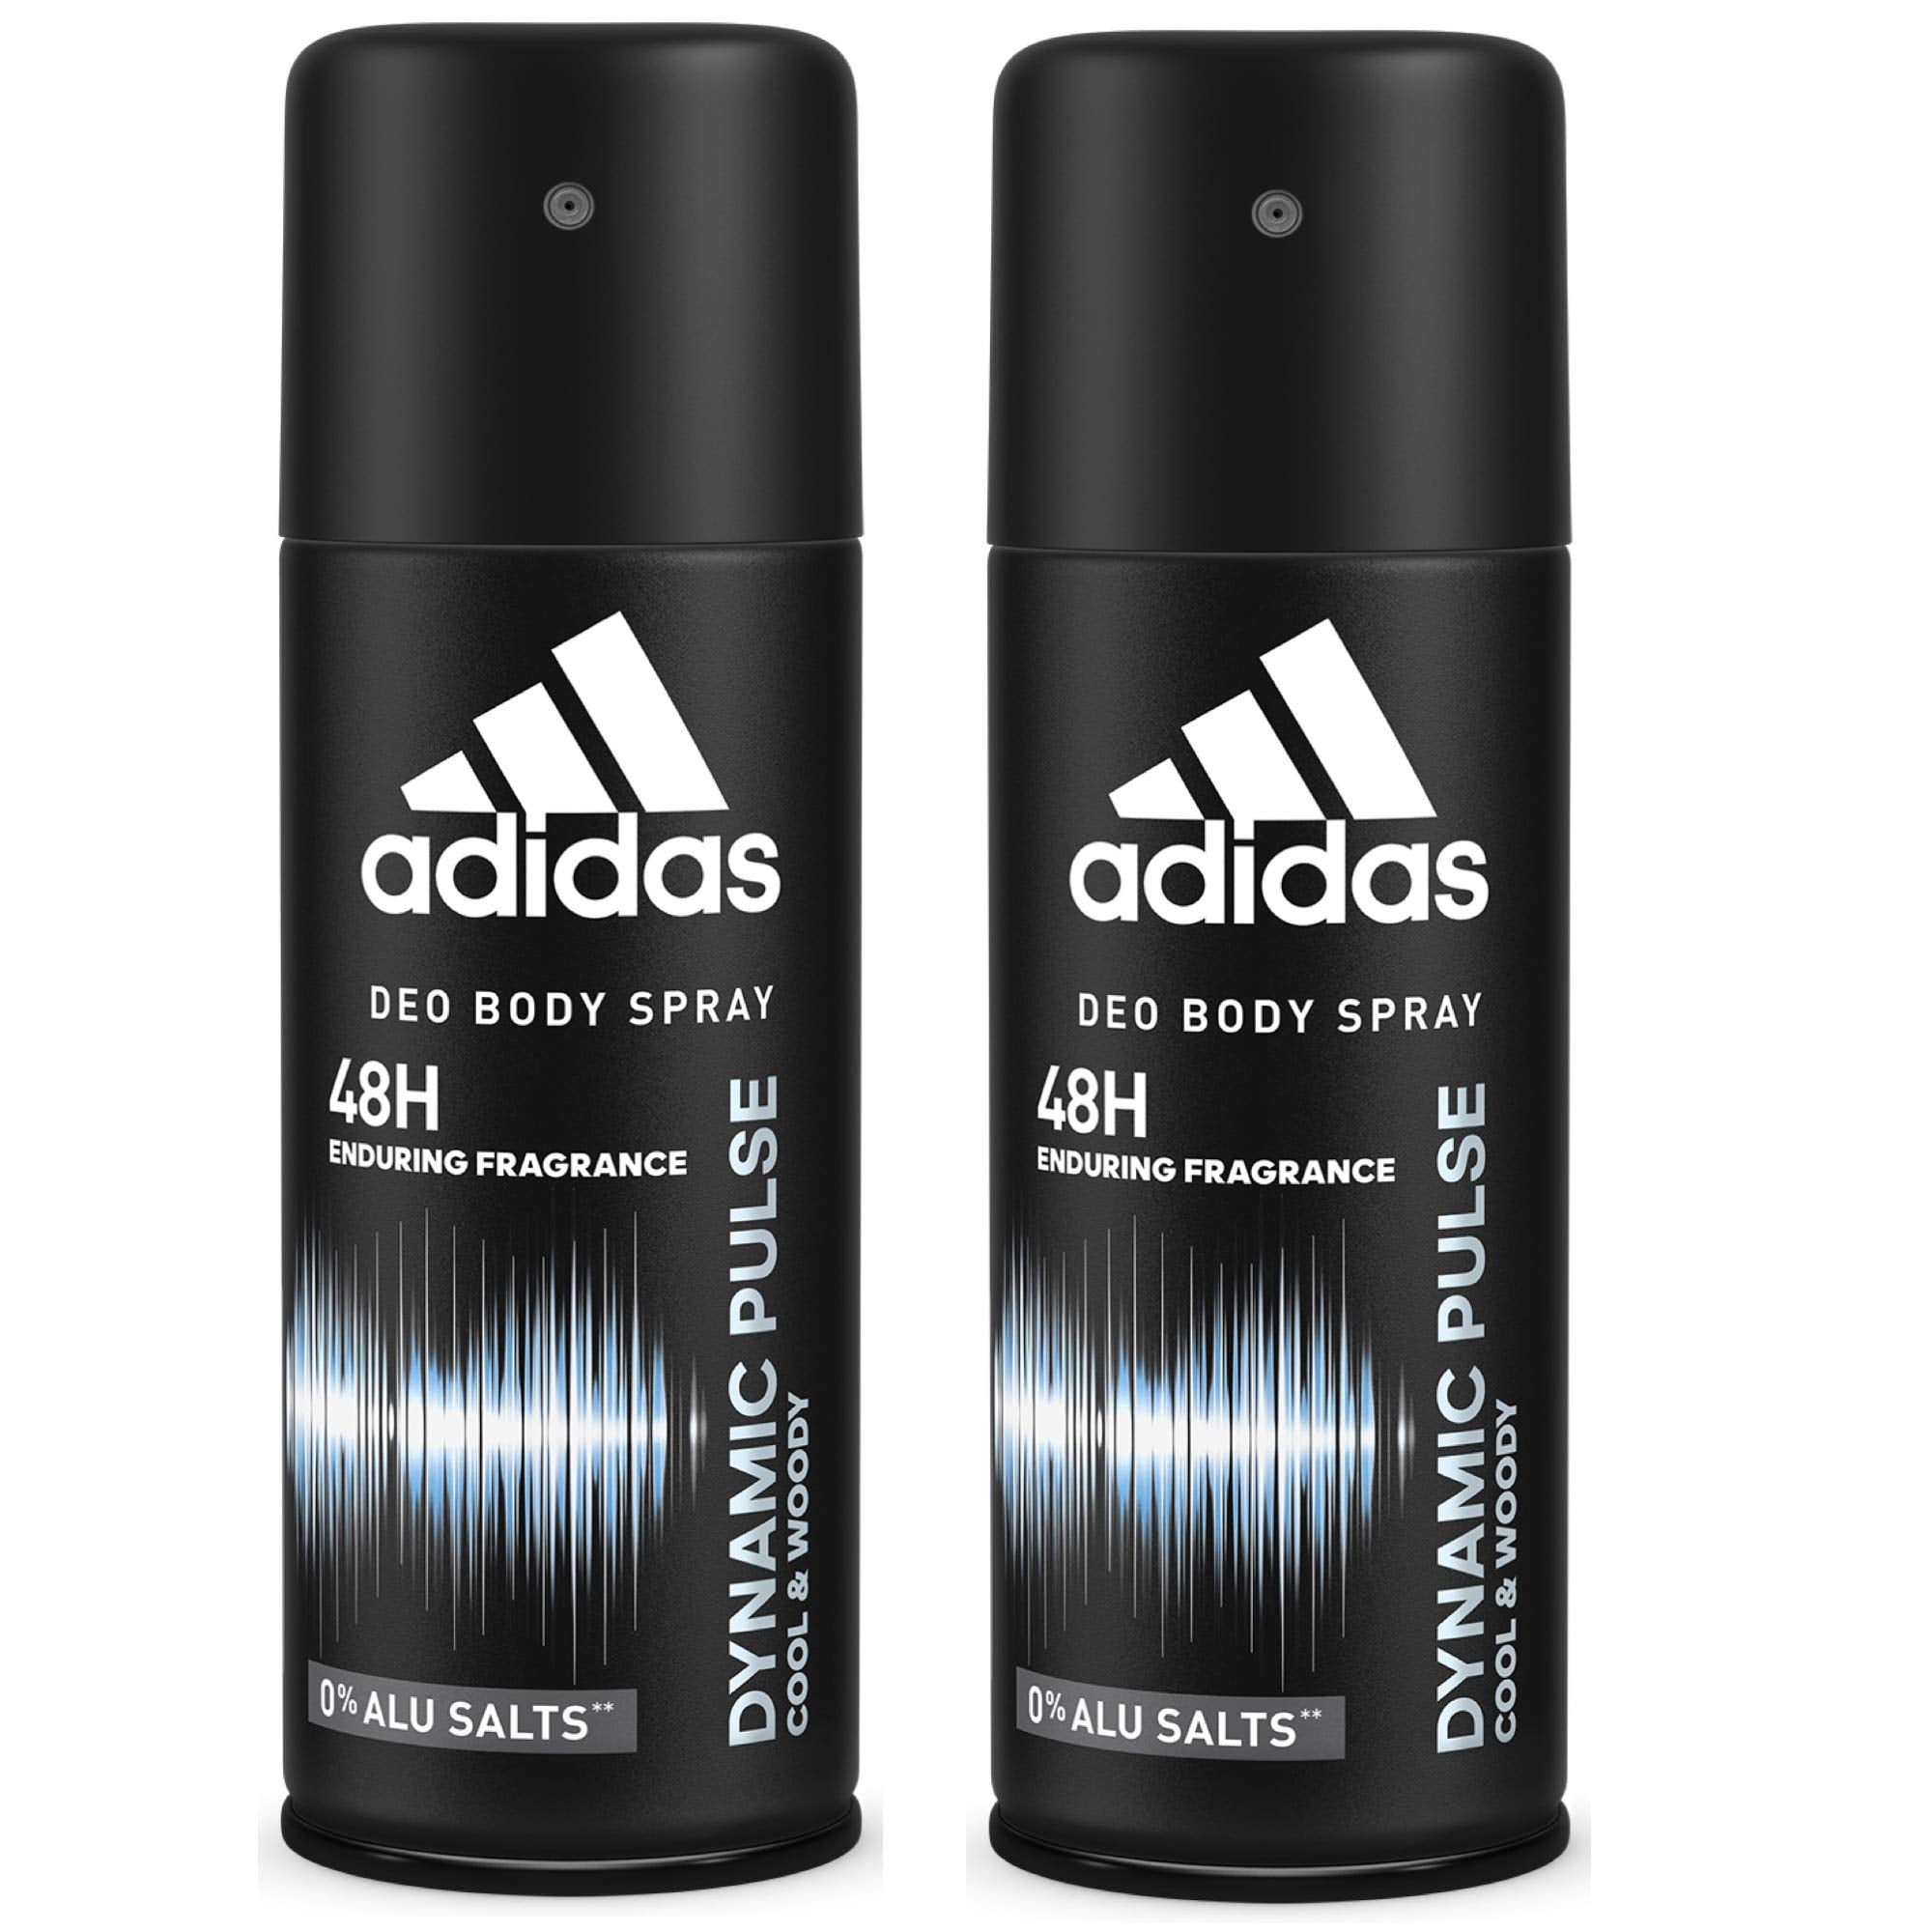 adidas dynamic pulse body spray